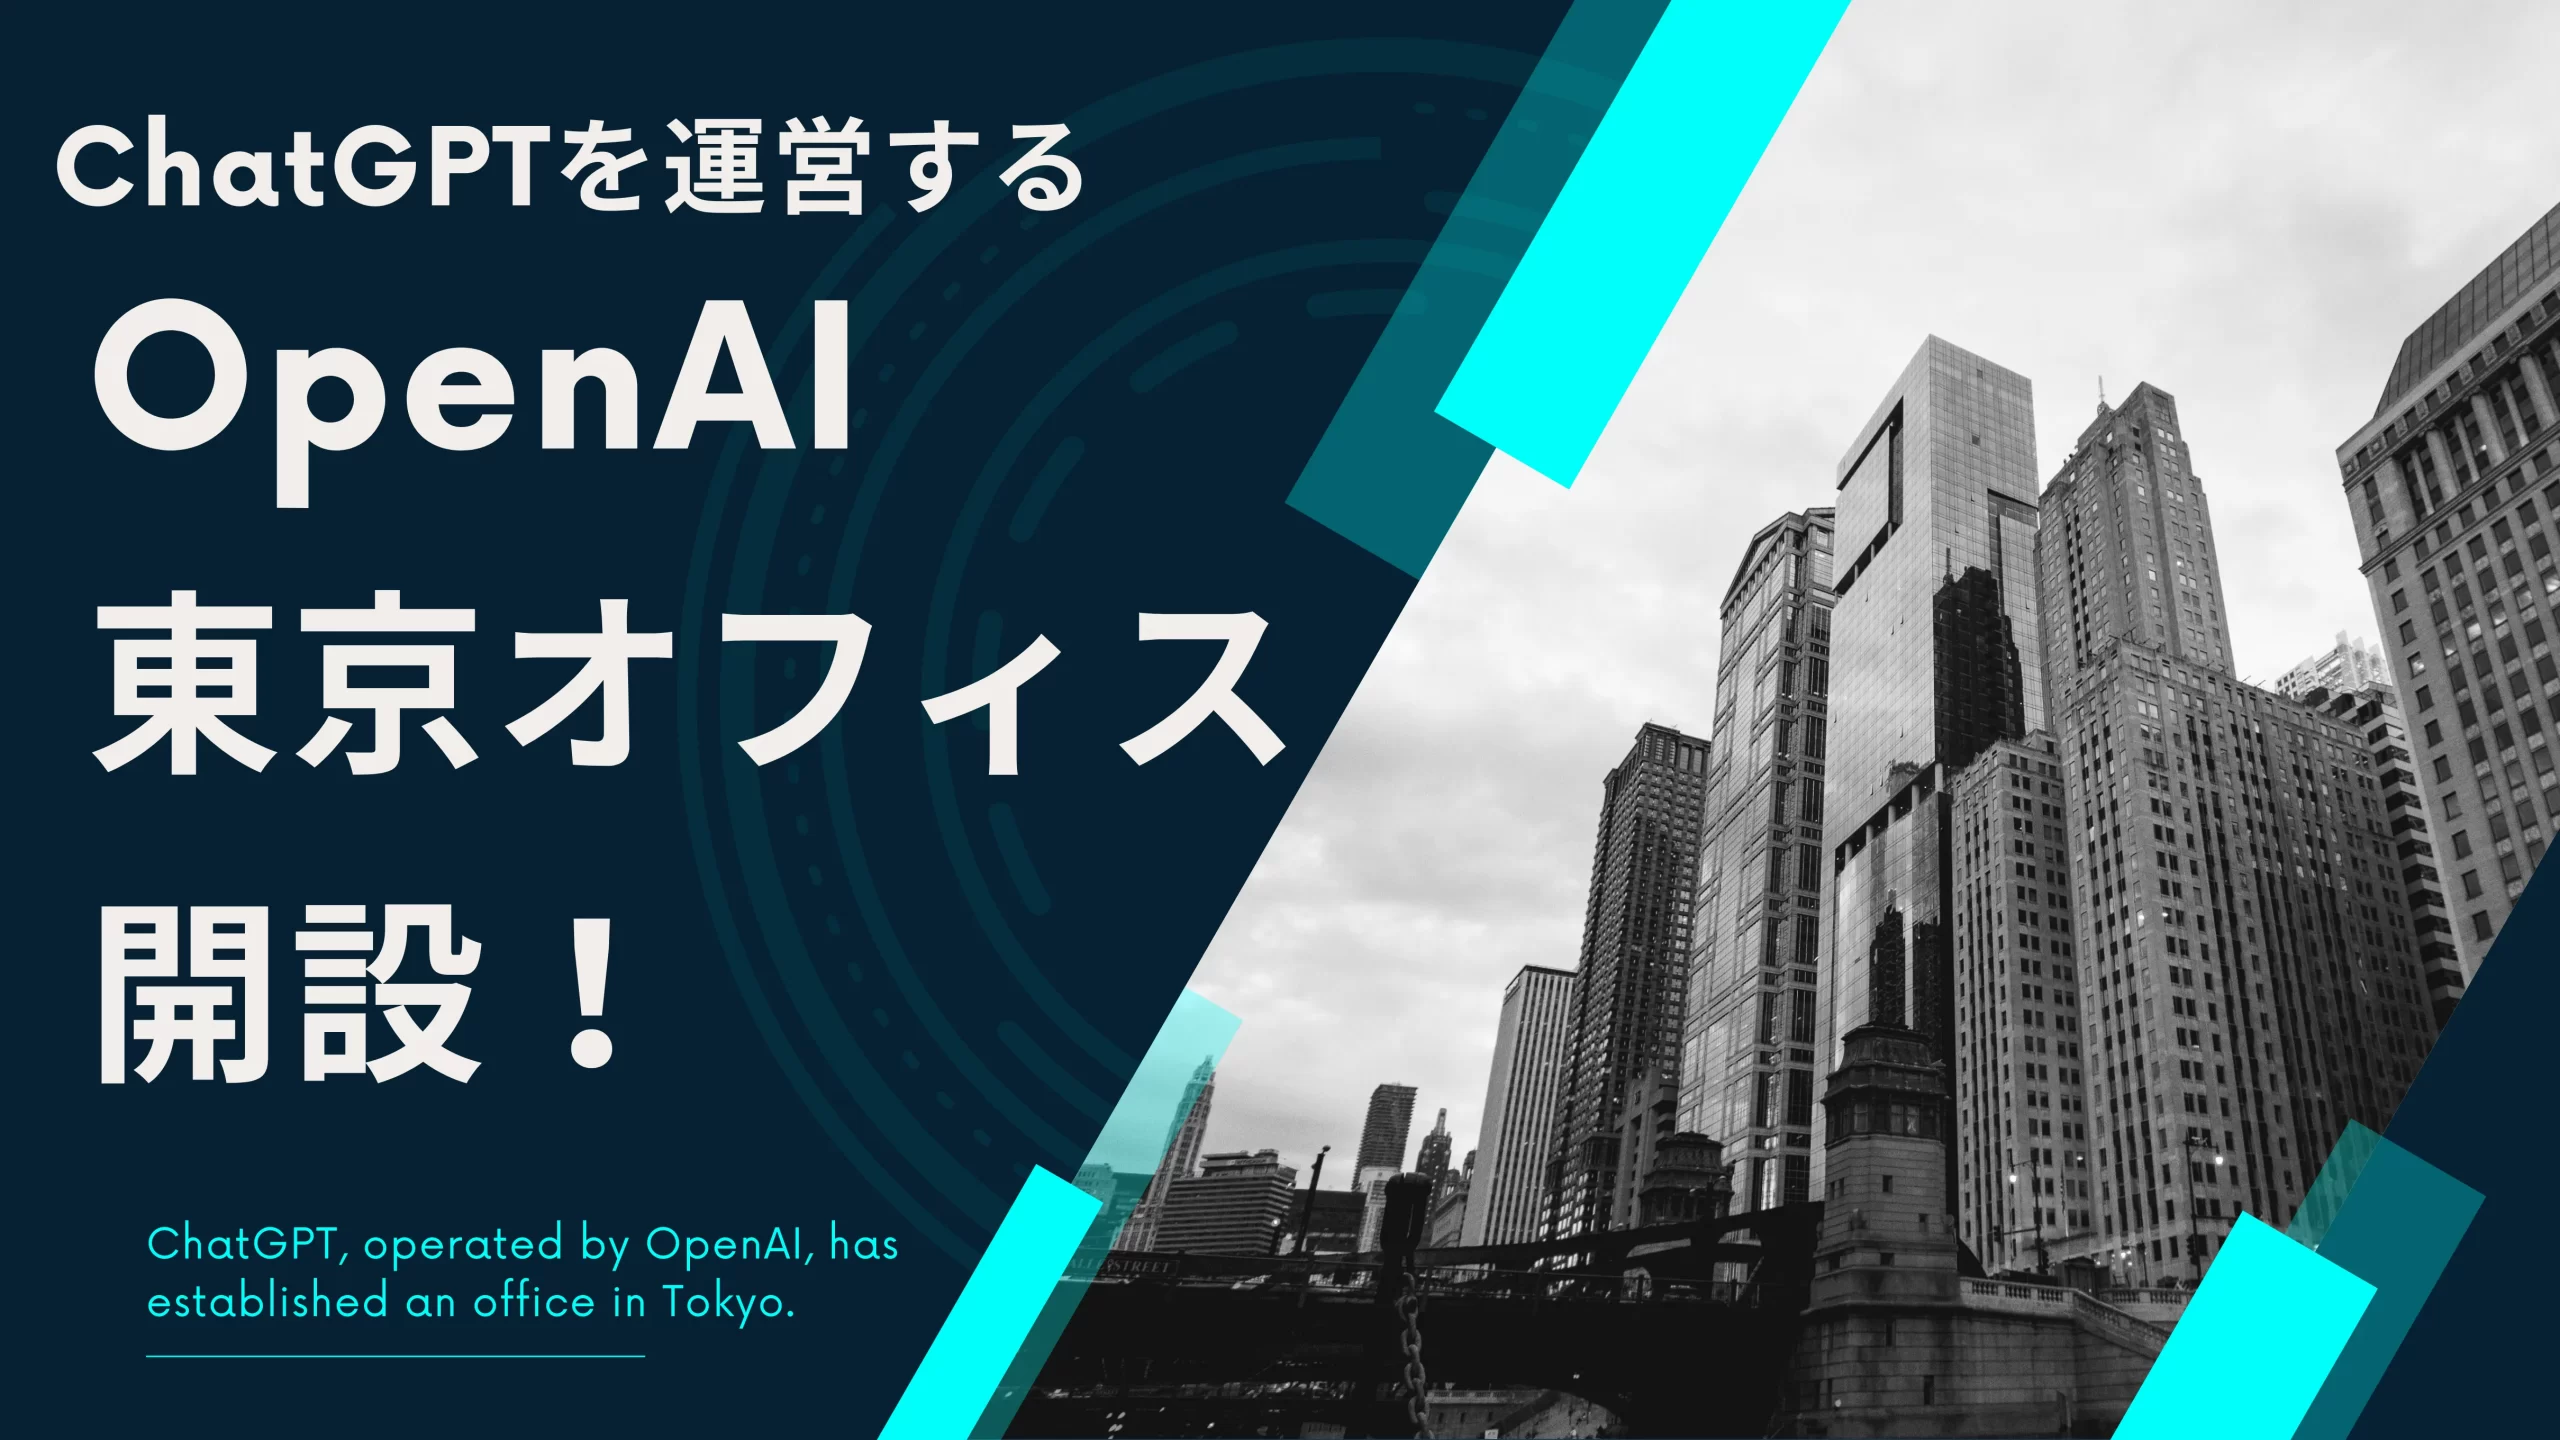 【関連サムネイル】OpenAIが東京オフィスを開設